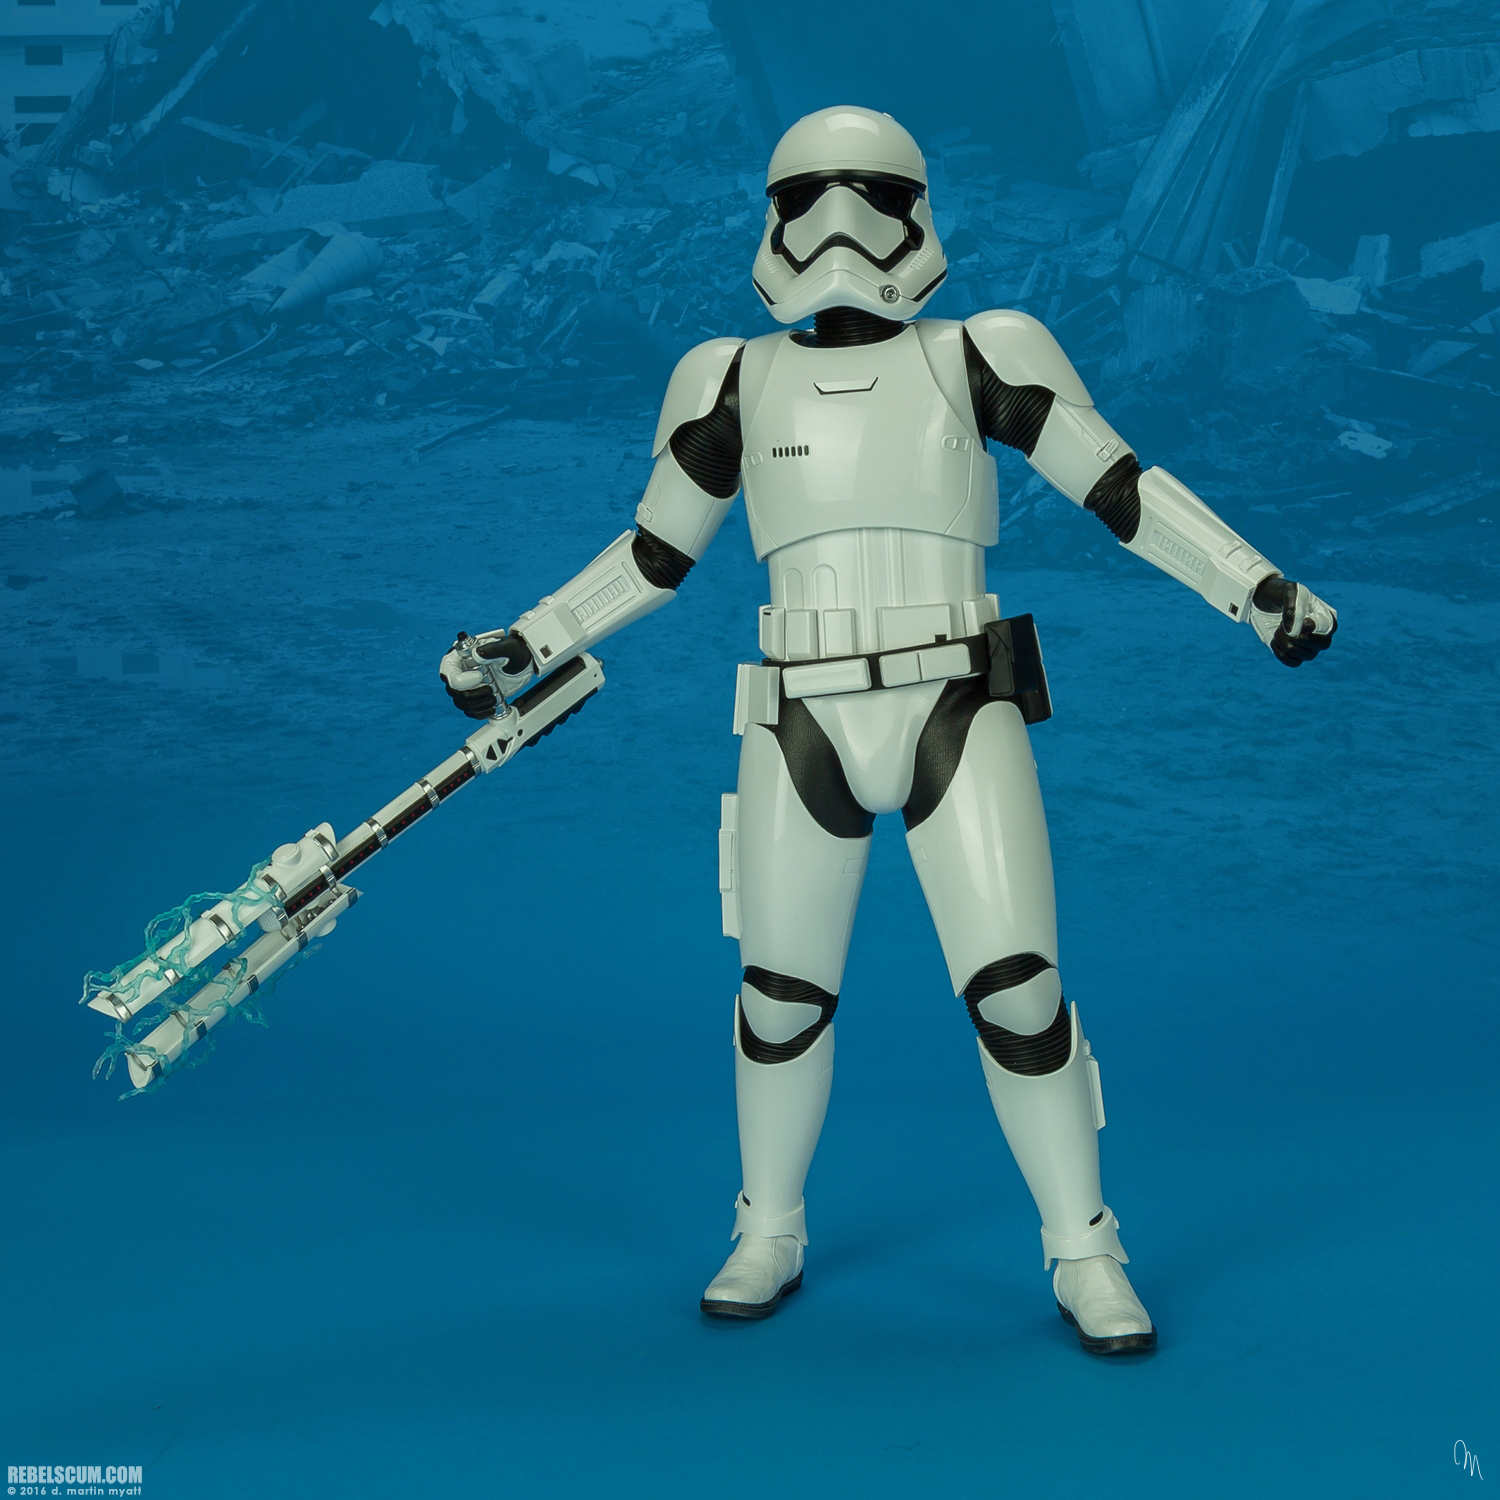 MMS346-Finn-First-Order-Riot-control-Stormtrooper-Hot-Toys-040.jpg